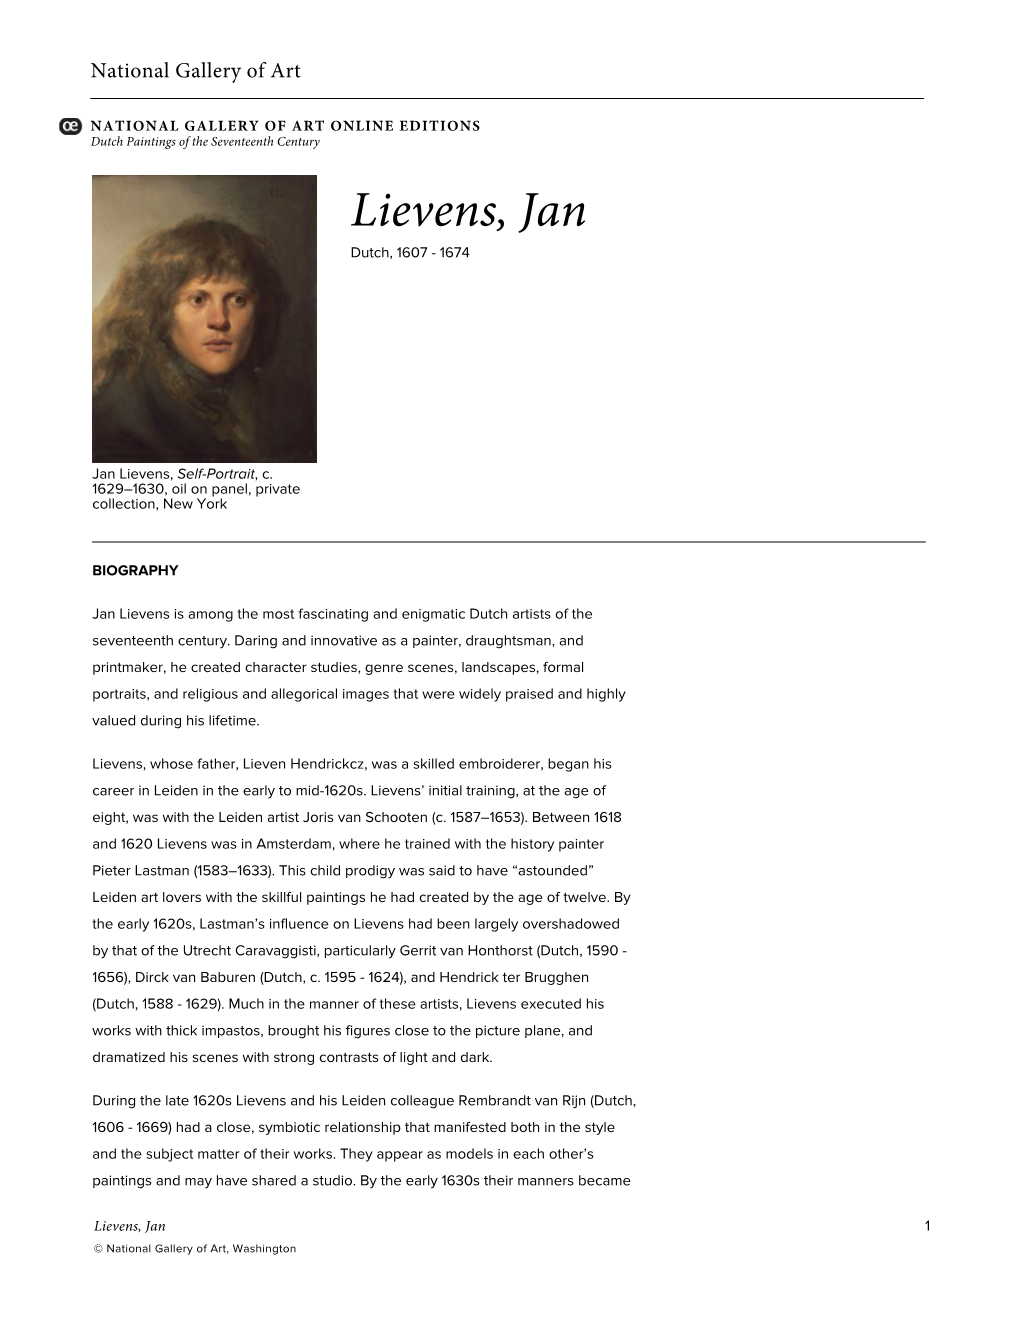 Lievens, Jan Dutch, 1607 - 1674